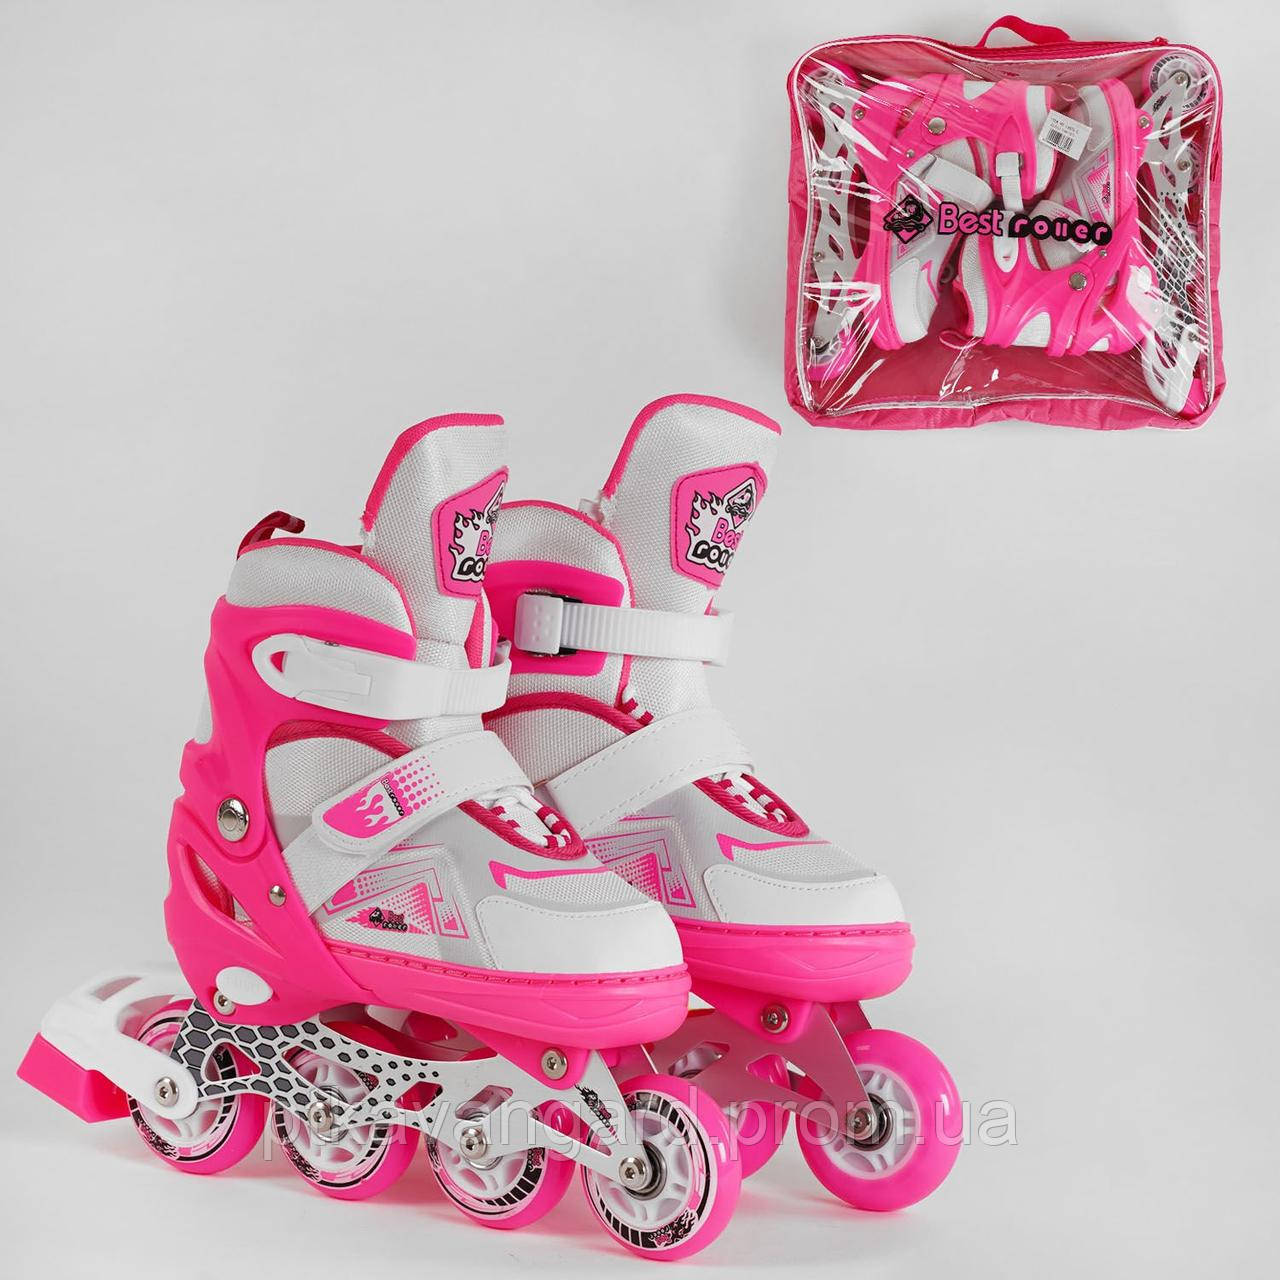 Дитячі ролики (роликові ковзани) Рожевий розмір 34-37 (М) дівчині Best Roller колеса PU